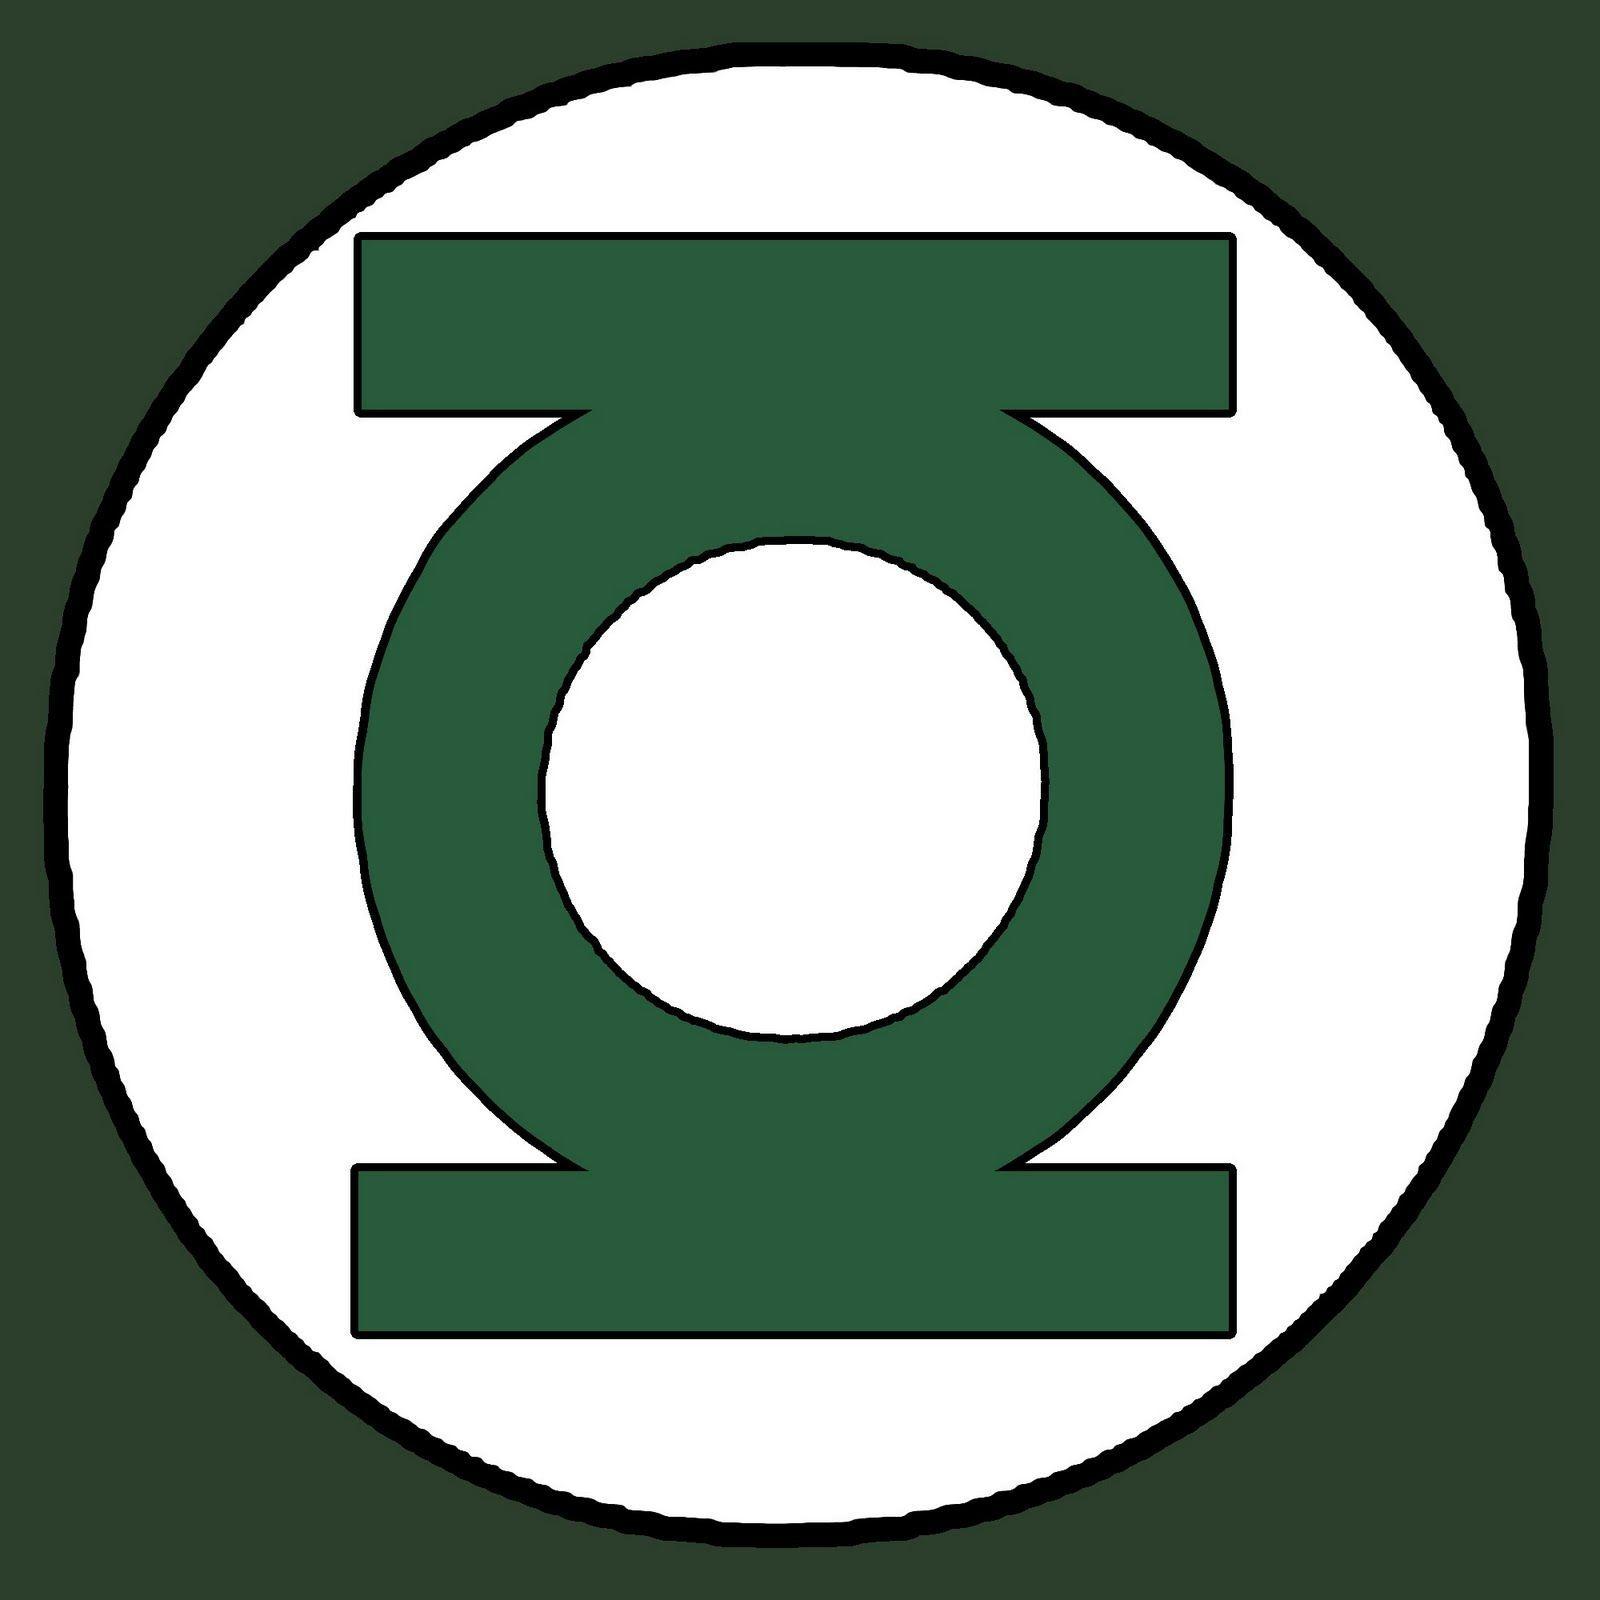 Green Lantern Symbol Logo - Superhero Logo Template. Green Lantern Emblem Green Beads